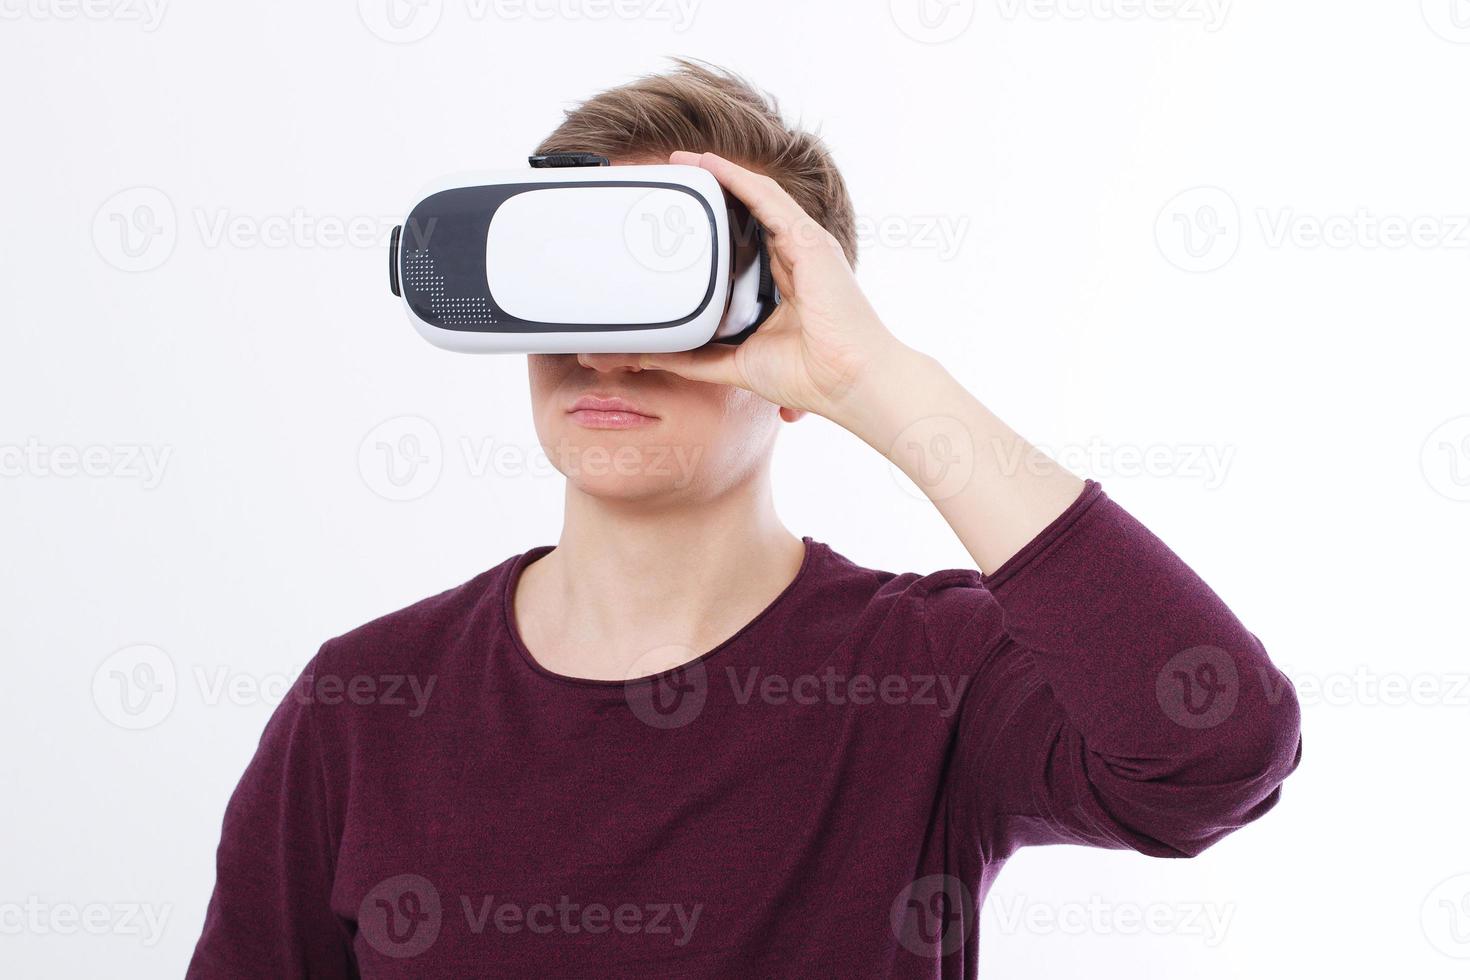 portrait de jeune homme portant des lunettes de réalité virtuelle isolé sur fond blanc. copiez l'espace et faites une maquette. smartphone et casque vr. image horizontale photo